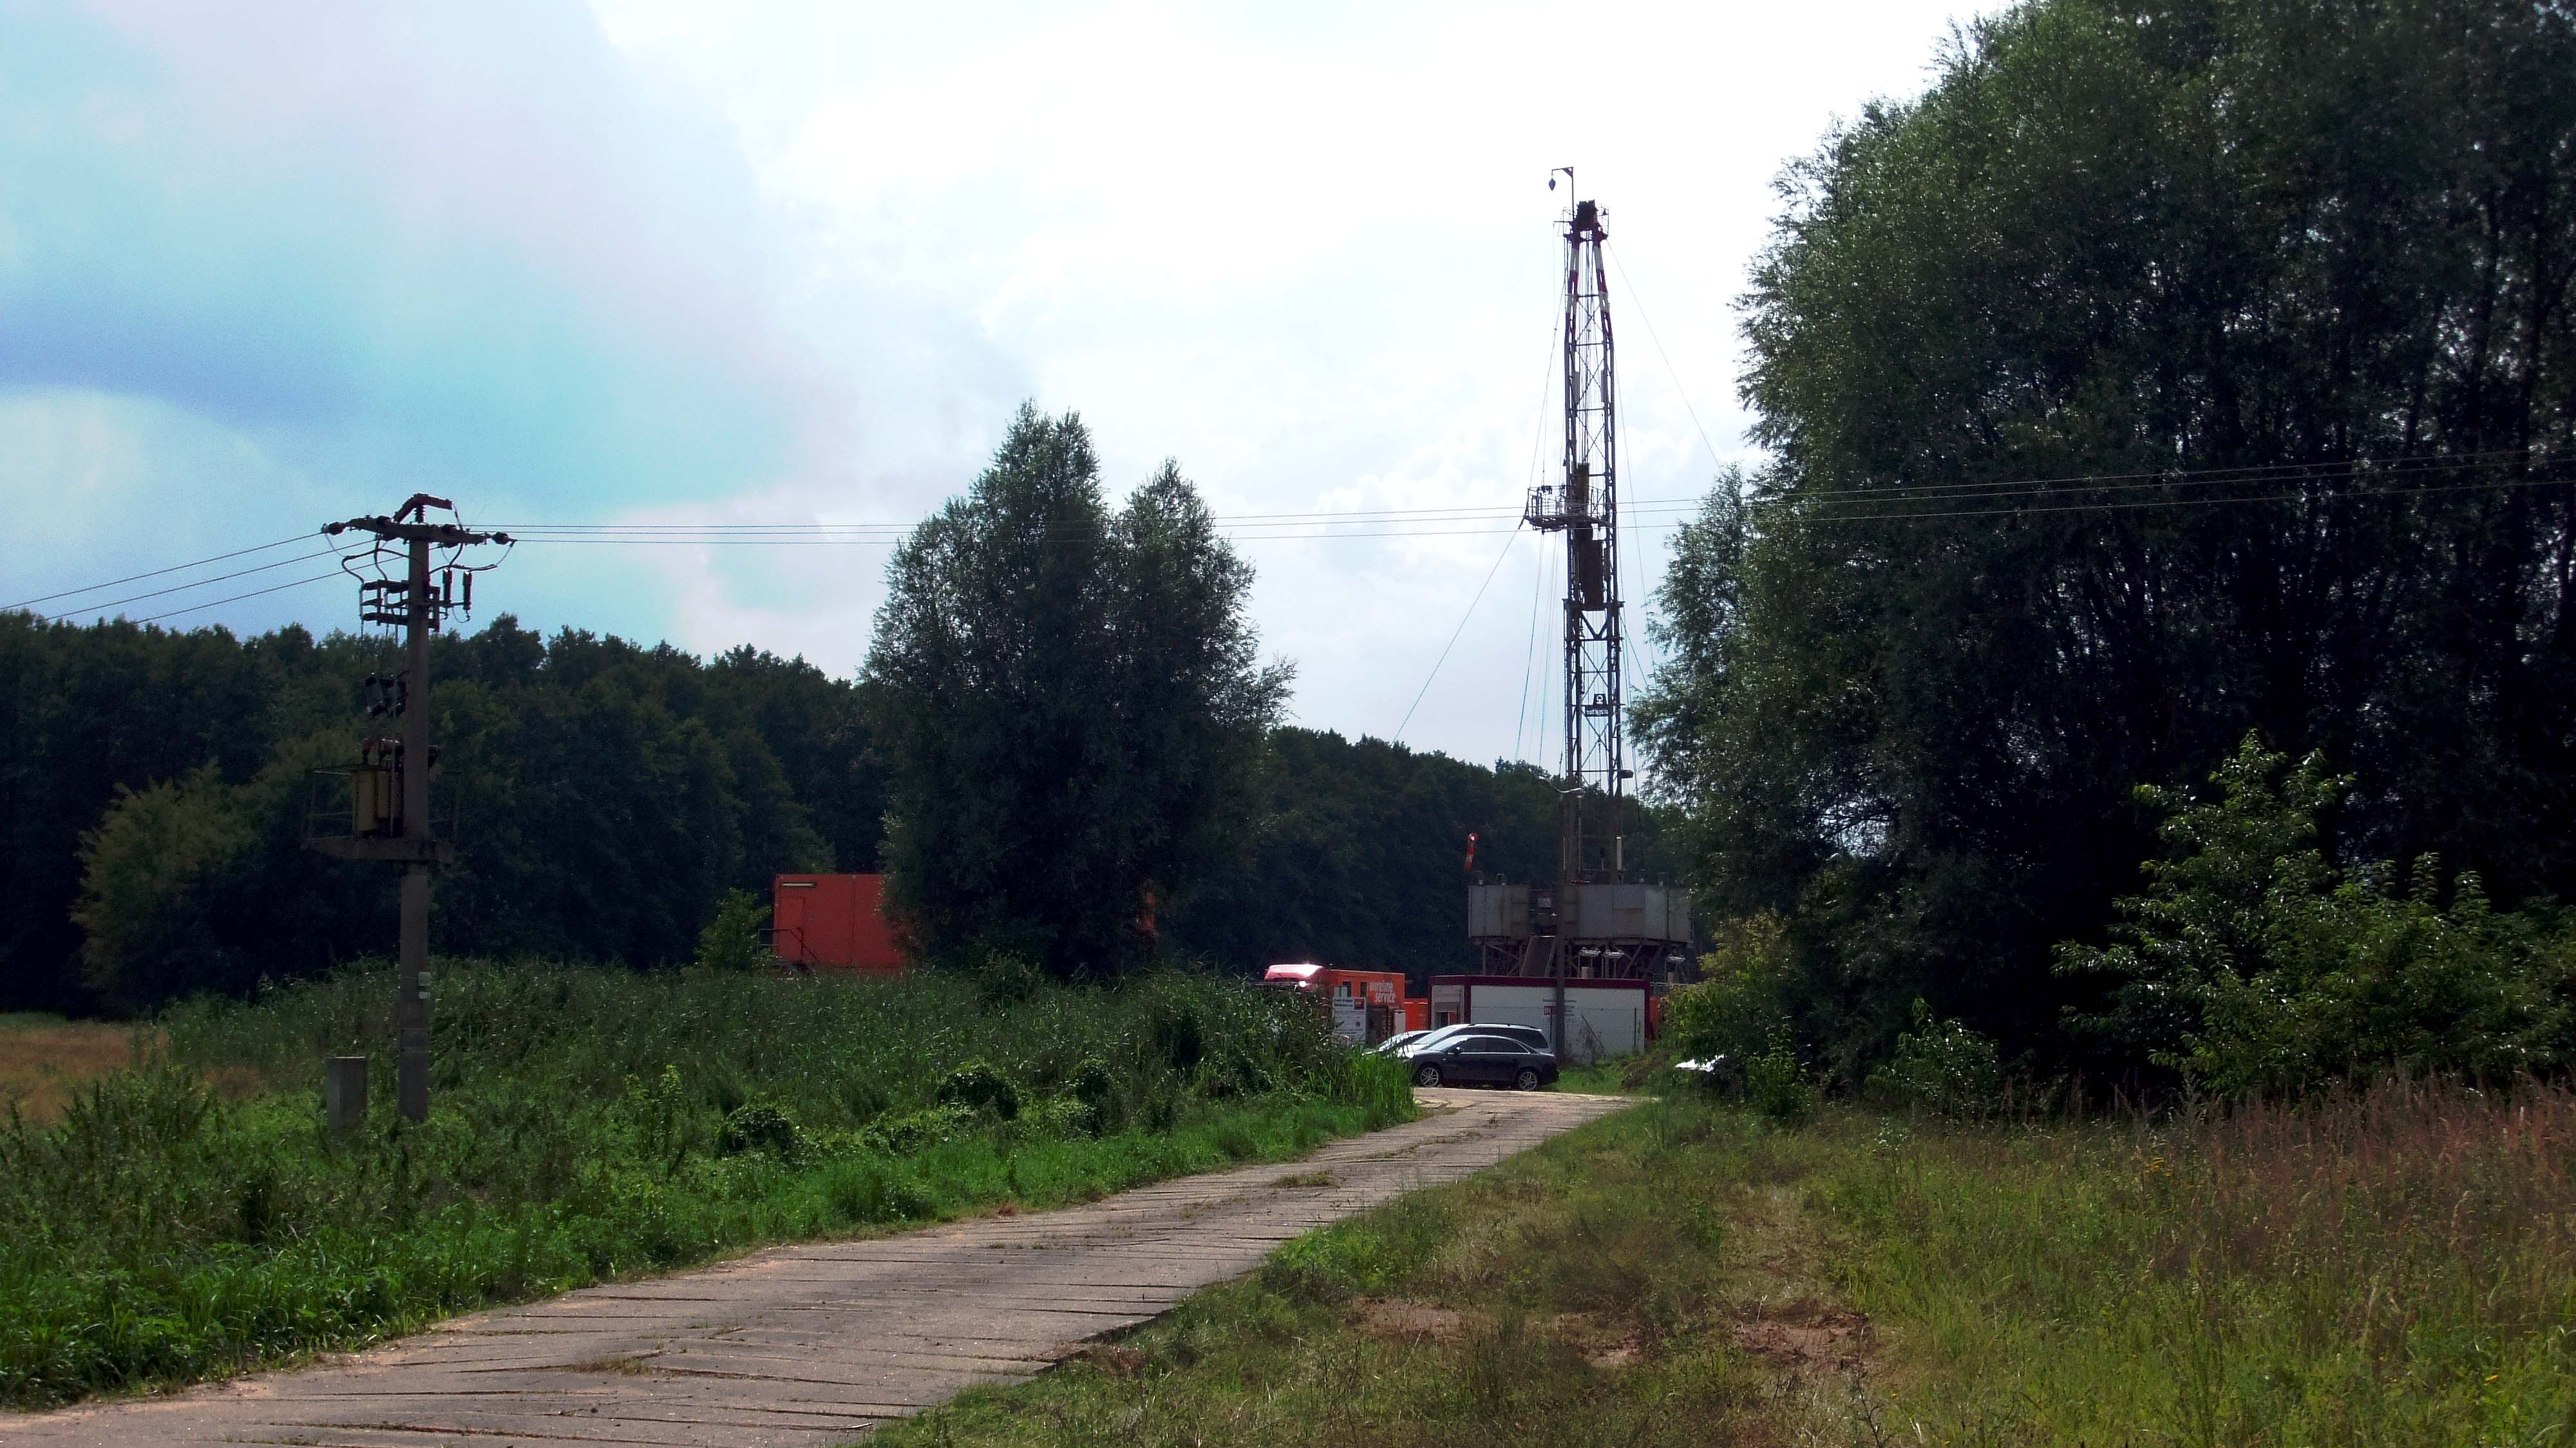 Workovereinsatz auf eine Erdgasbohrung in der Altmark. Sommer 2014. chef79